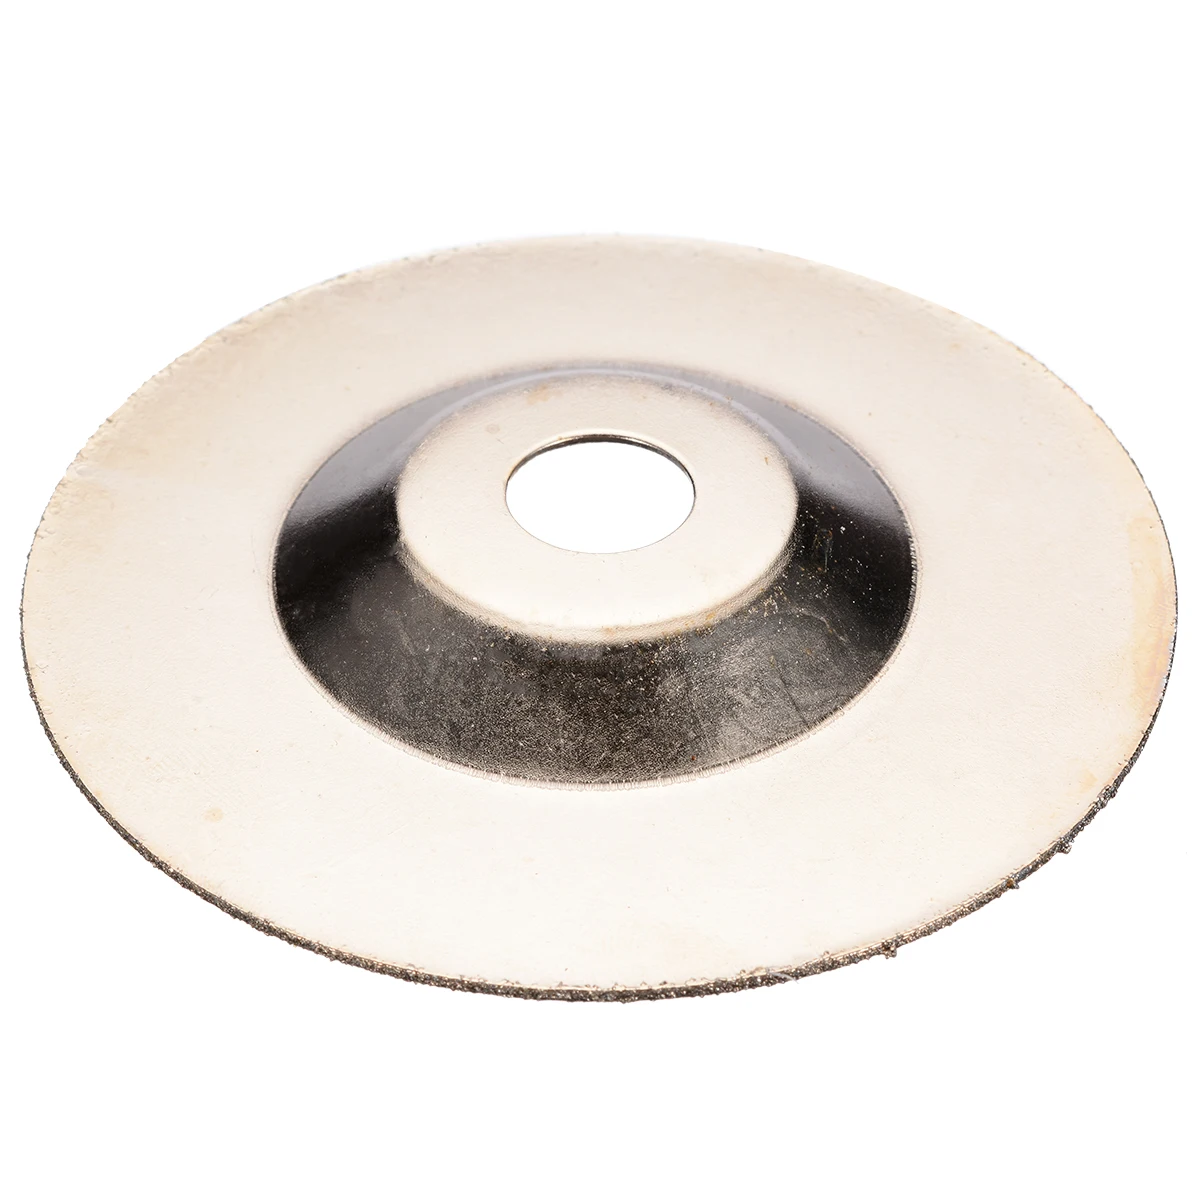 1pc80 зернистость Алмазное покрытие шлифовальный круг 4 дюйма угловая шлифовальная машина диск режущая Пила Лезвия роторные абразивные инструменты 100 мм* 16 мм